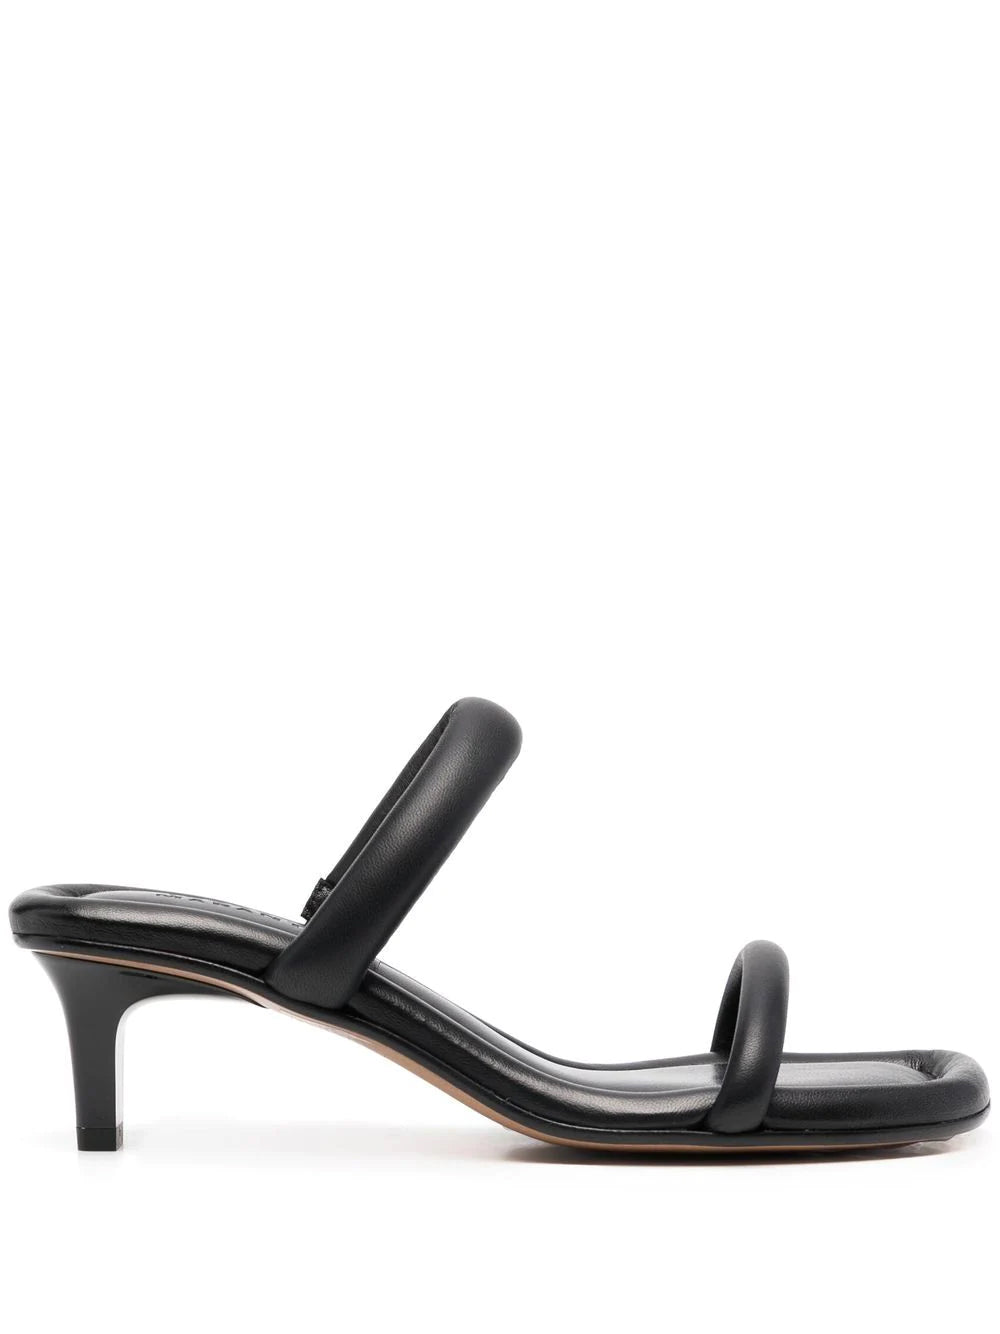 Isabel Marant Black Sandals 